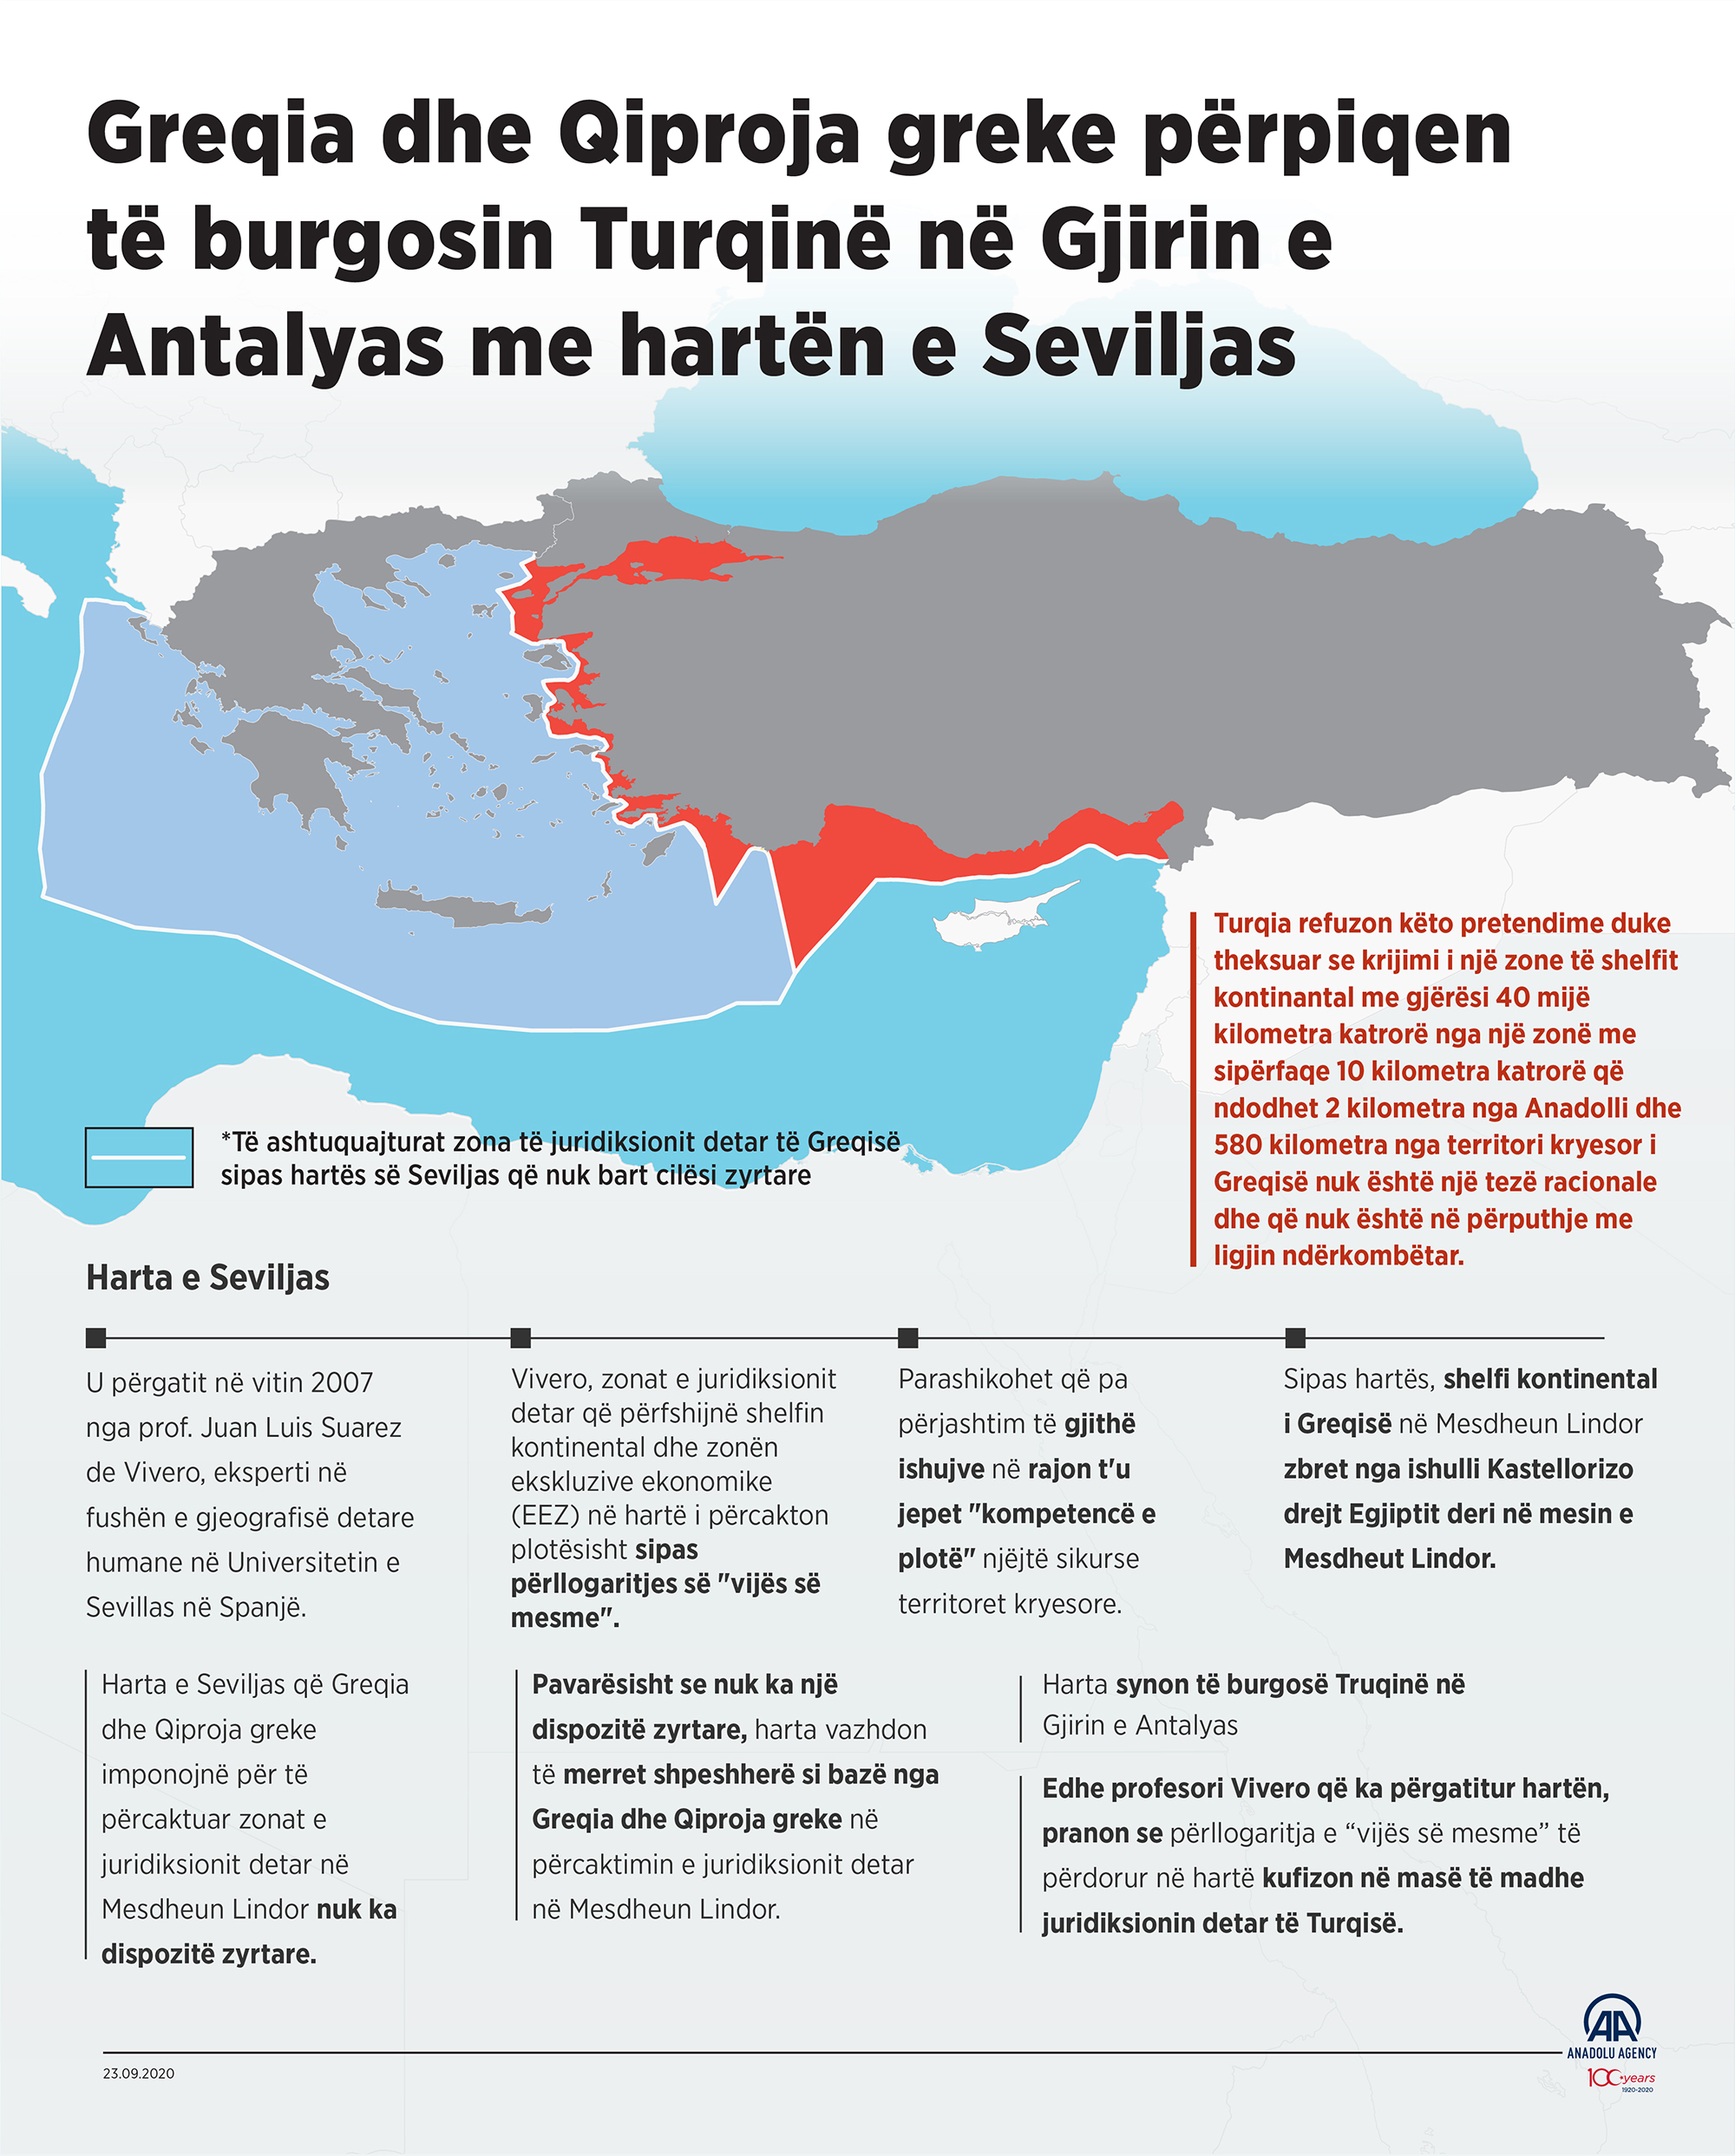 Greqia dhe Qiproja greke përpiqen të burgosin Turqinë në Gjirin e Antalyas me hartën e Seviljas